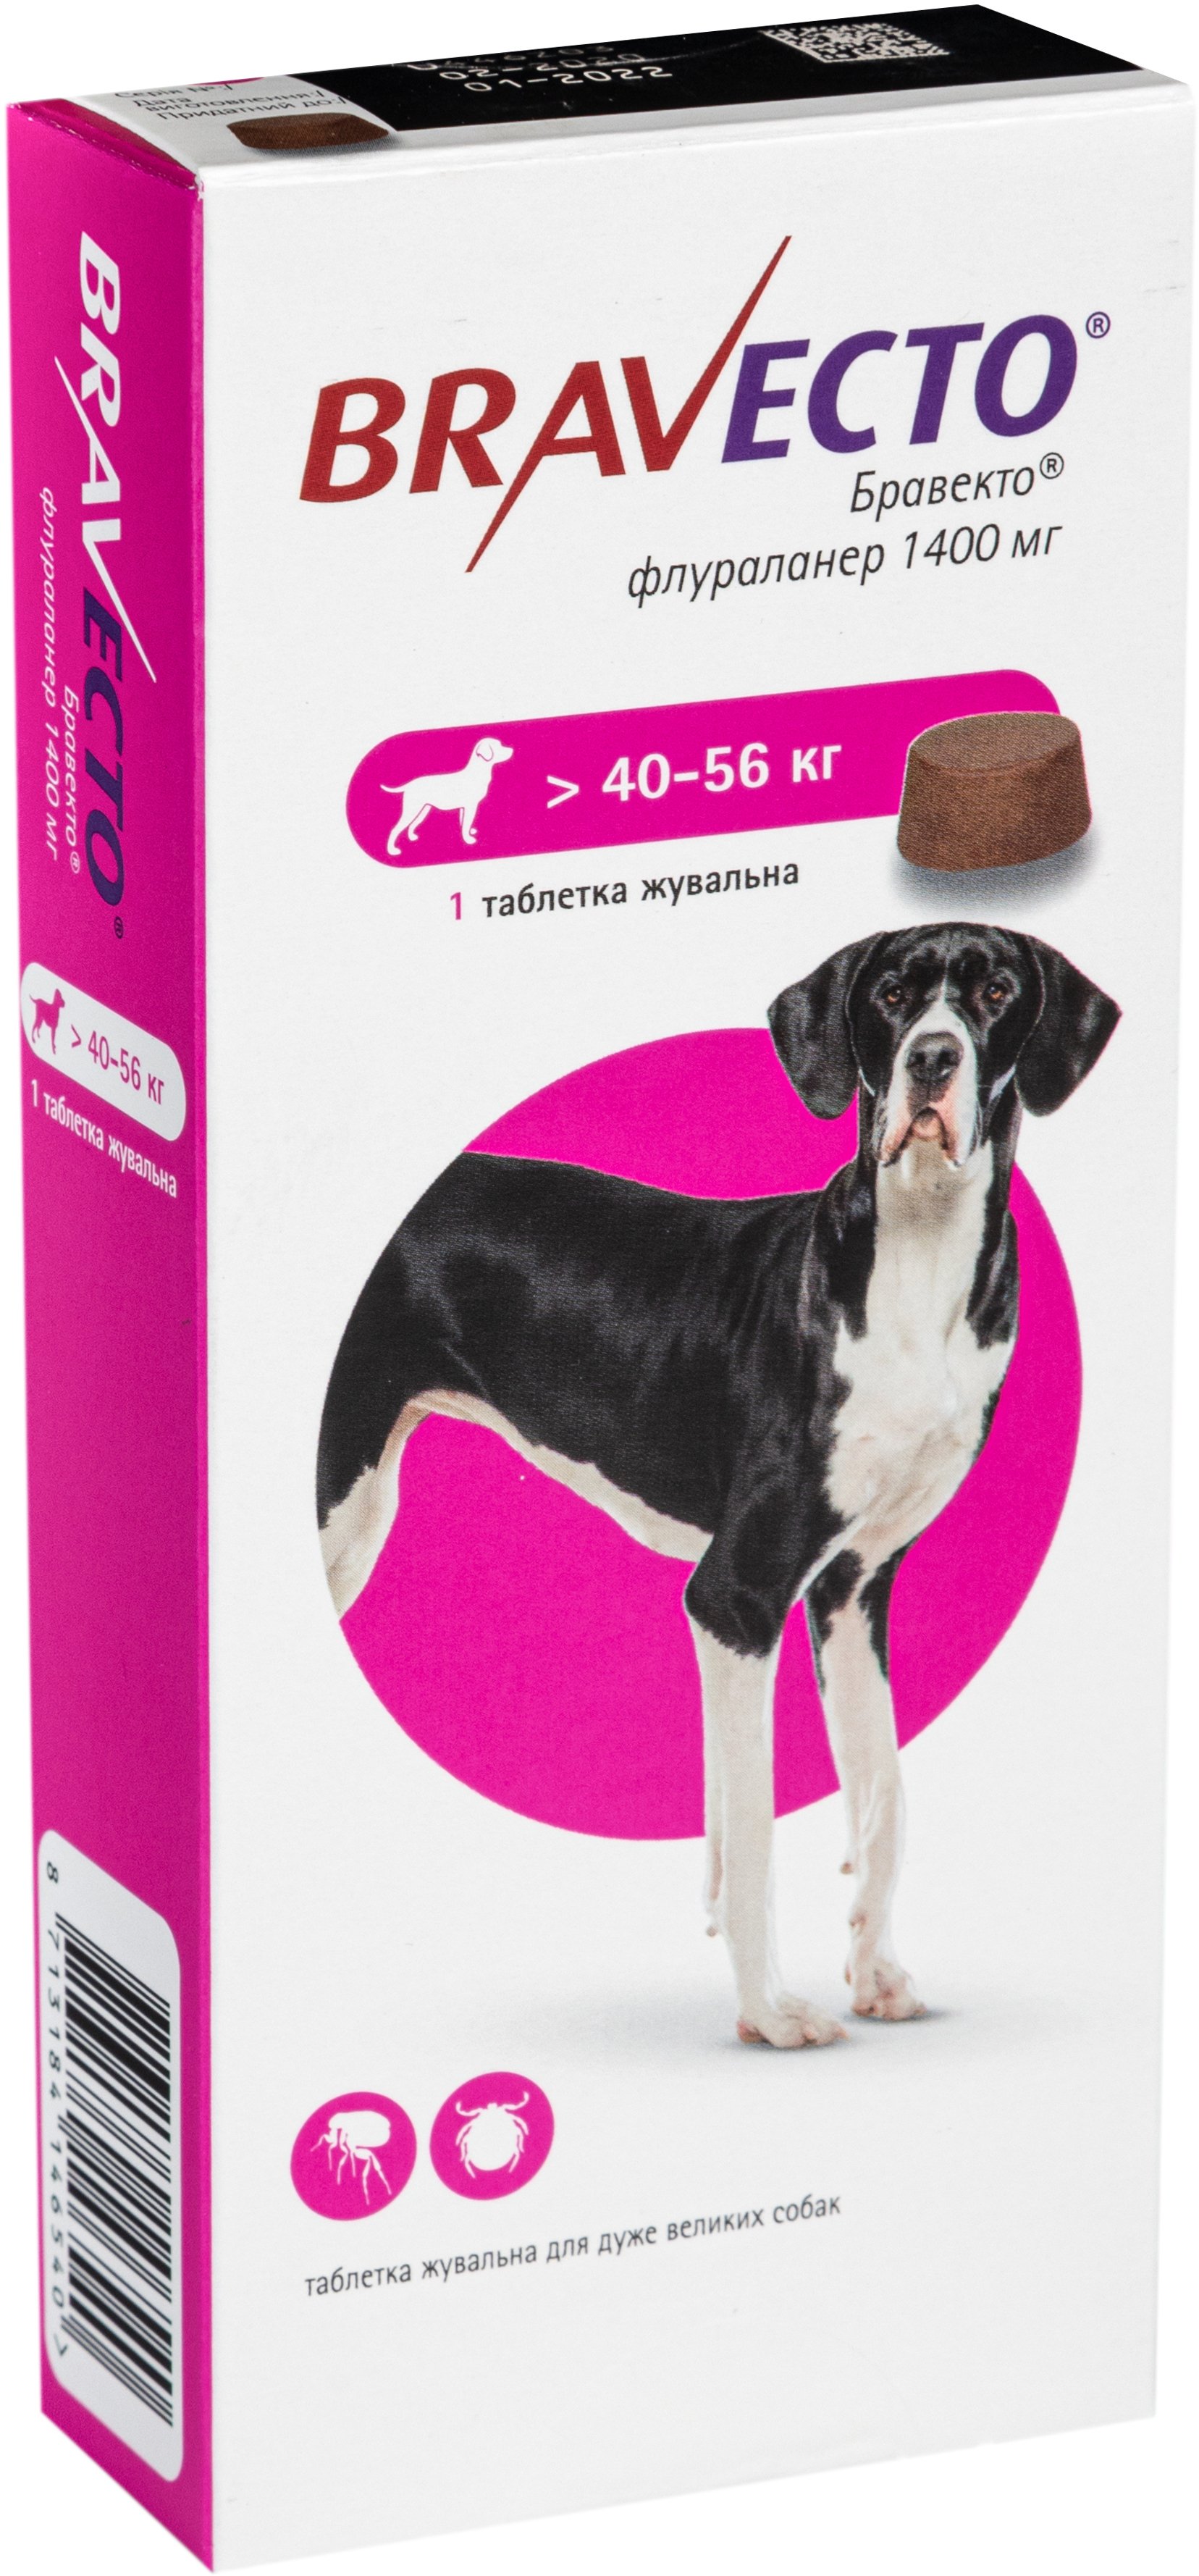 Жевательная таблетка Bravecto (Бравекто) от блох и клещей для собак 40 - 56 кг фото 3